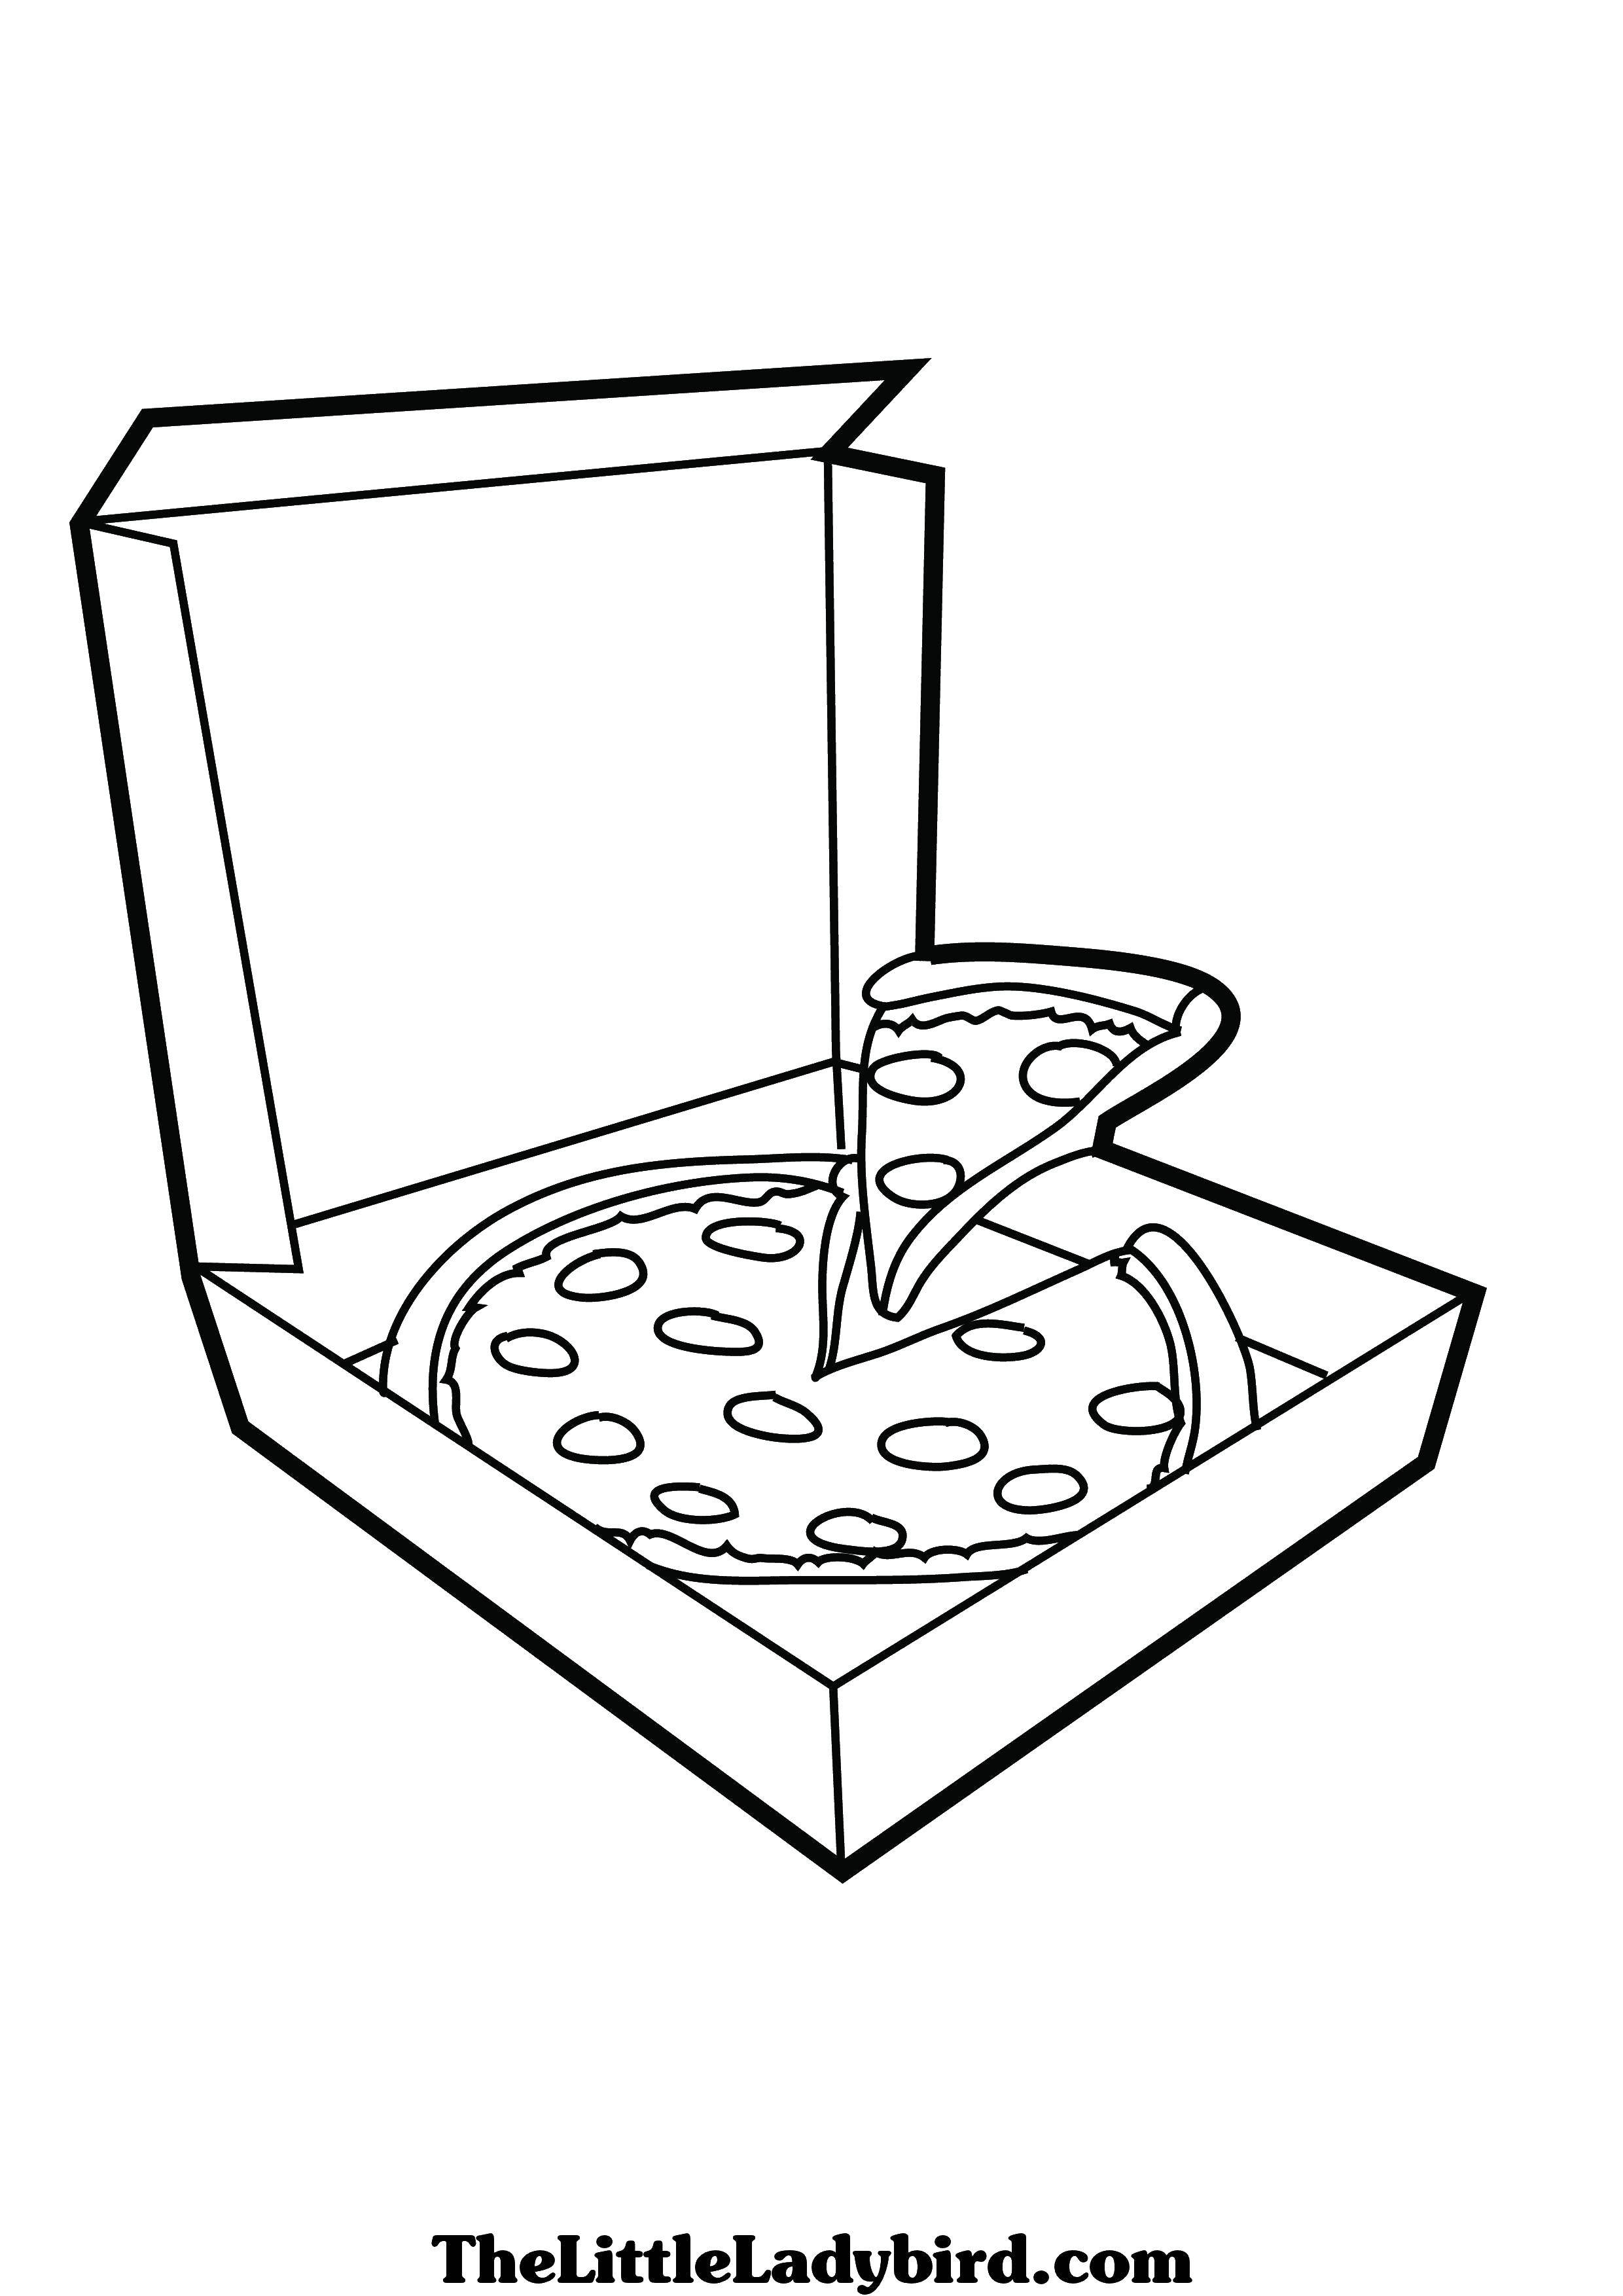 Раскраски Раскраска Пицца Еда, скачать распечатать раскраски.